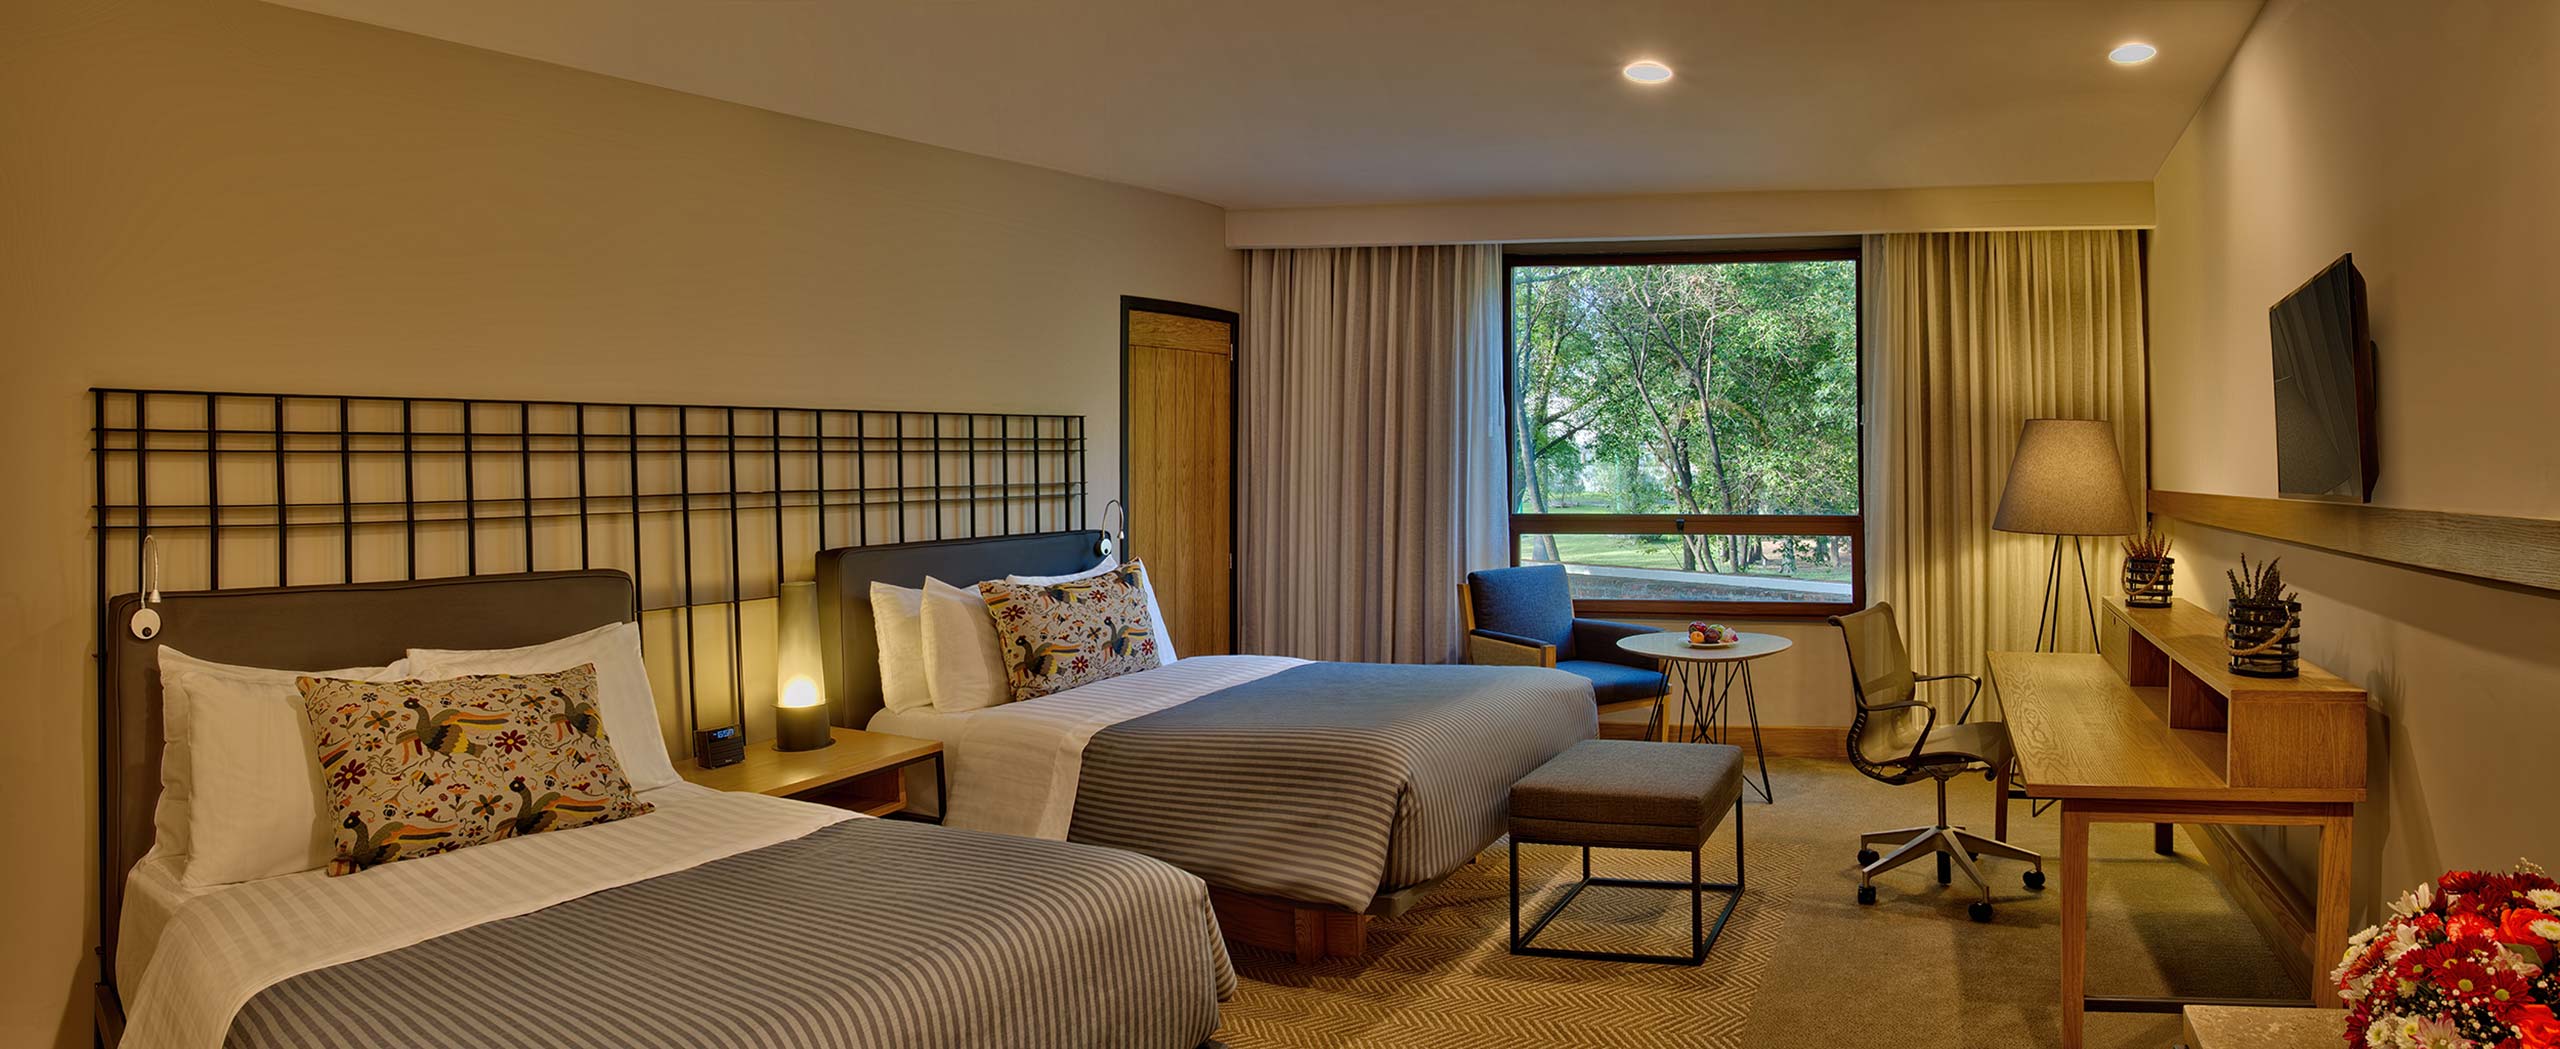 Room with two beds Hotel Hacienda Jurica by Brisas Queretaro